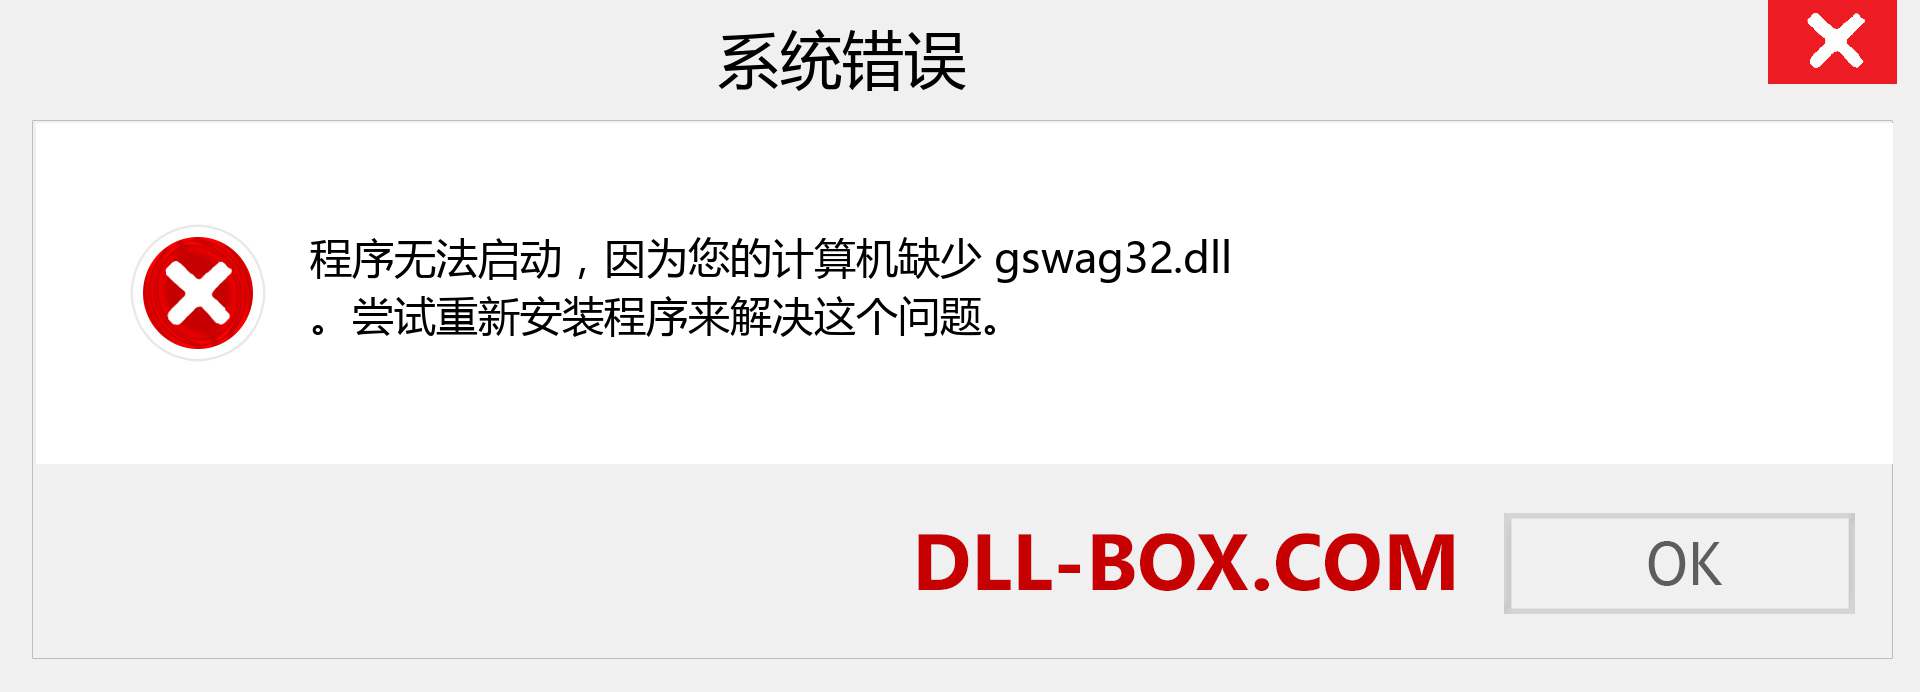 gswag32.dll 文件丢失？。 适用于 Windows 7、8、10 的下载 - 修复 Windows、照片、图像上的 gswag32 dll 丢失错误